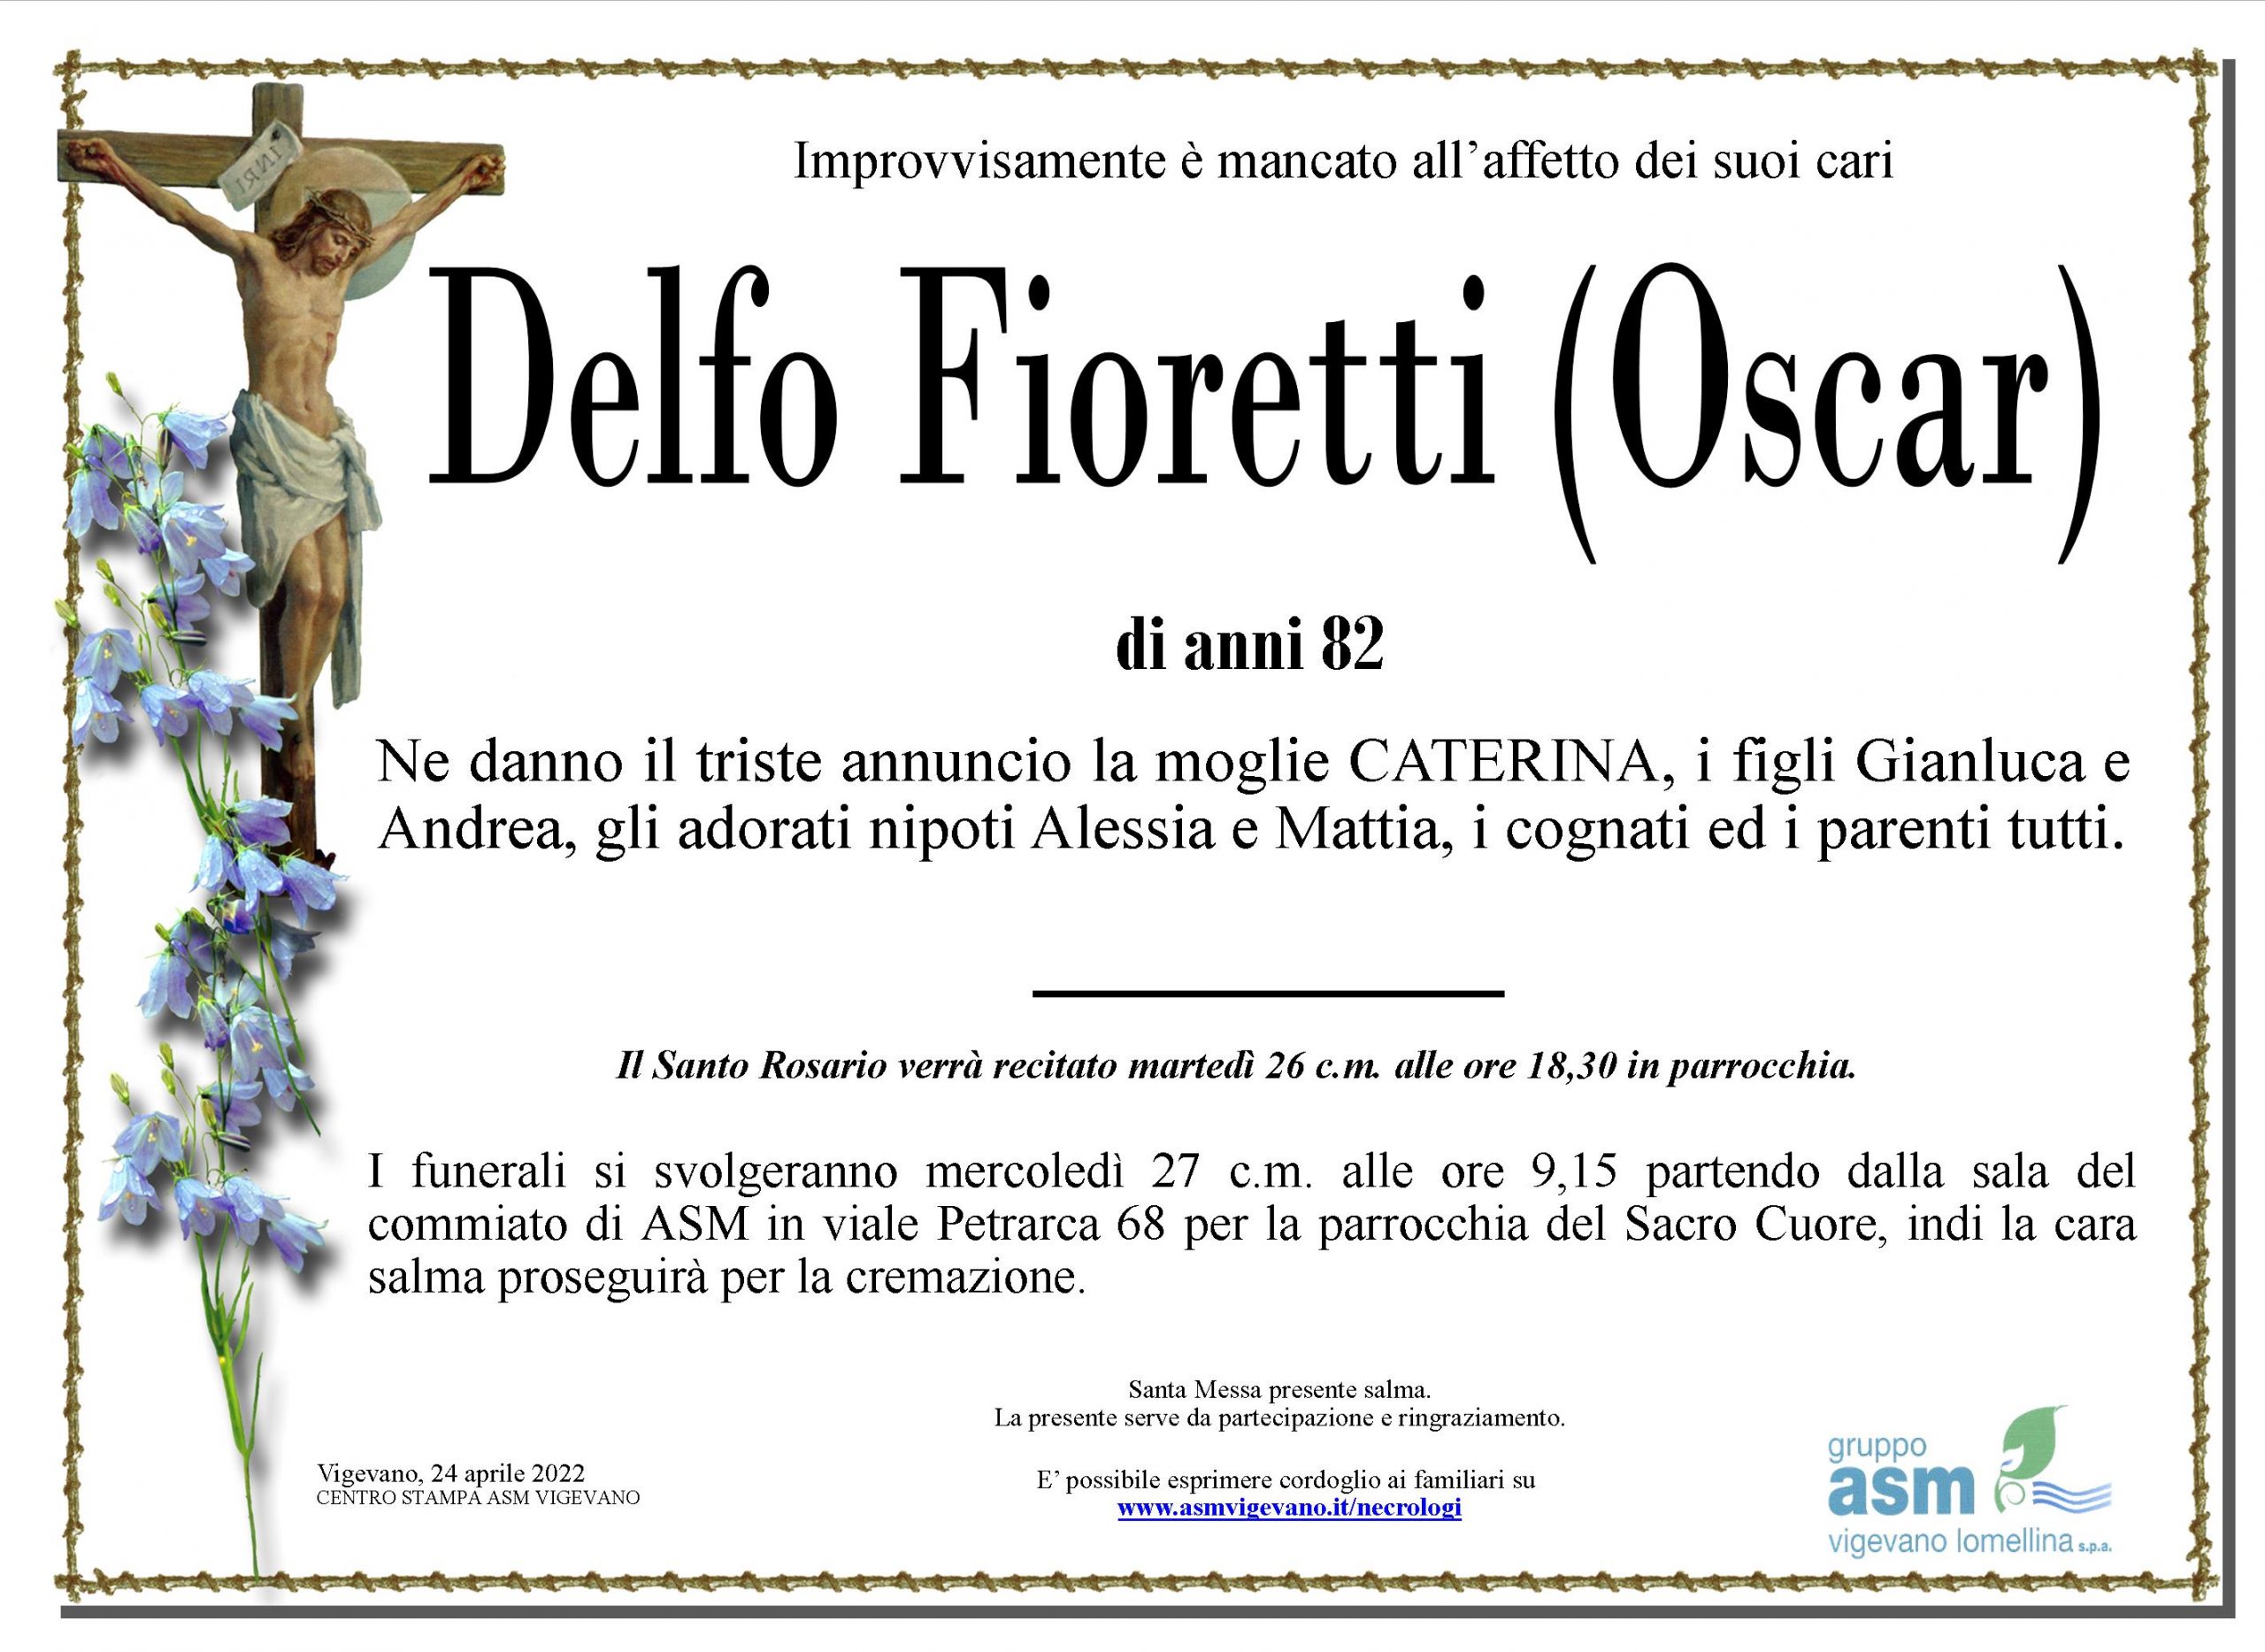 Delfo Fioretti